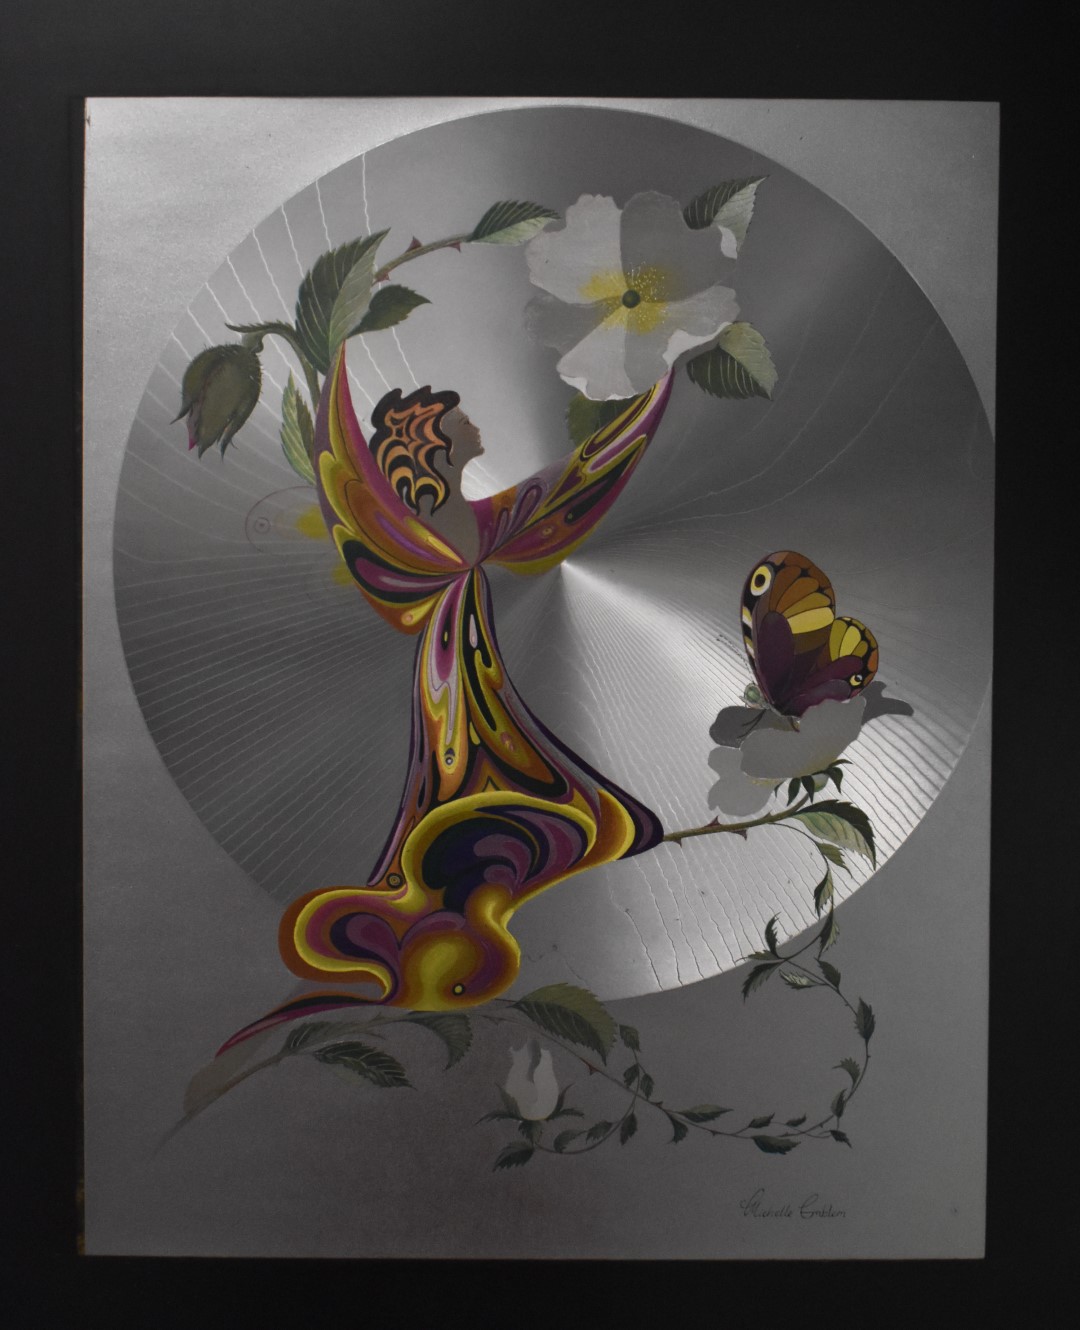 Pair of Michelle Emblem foil art pictures of fairies, 49 x 39cm - Image 5 of 11